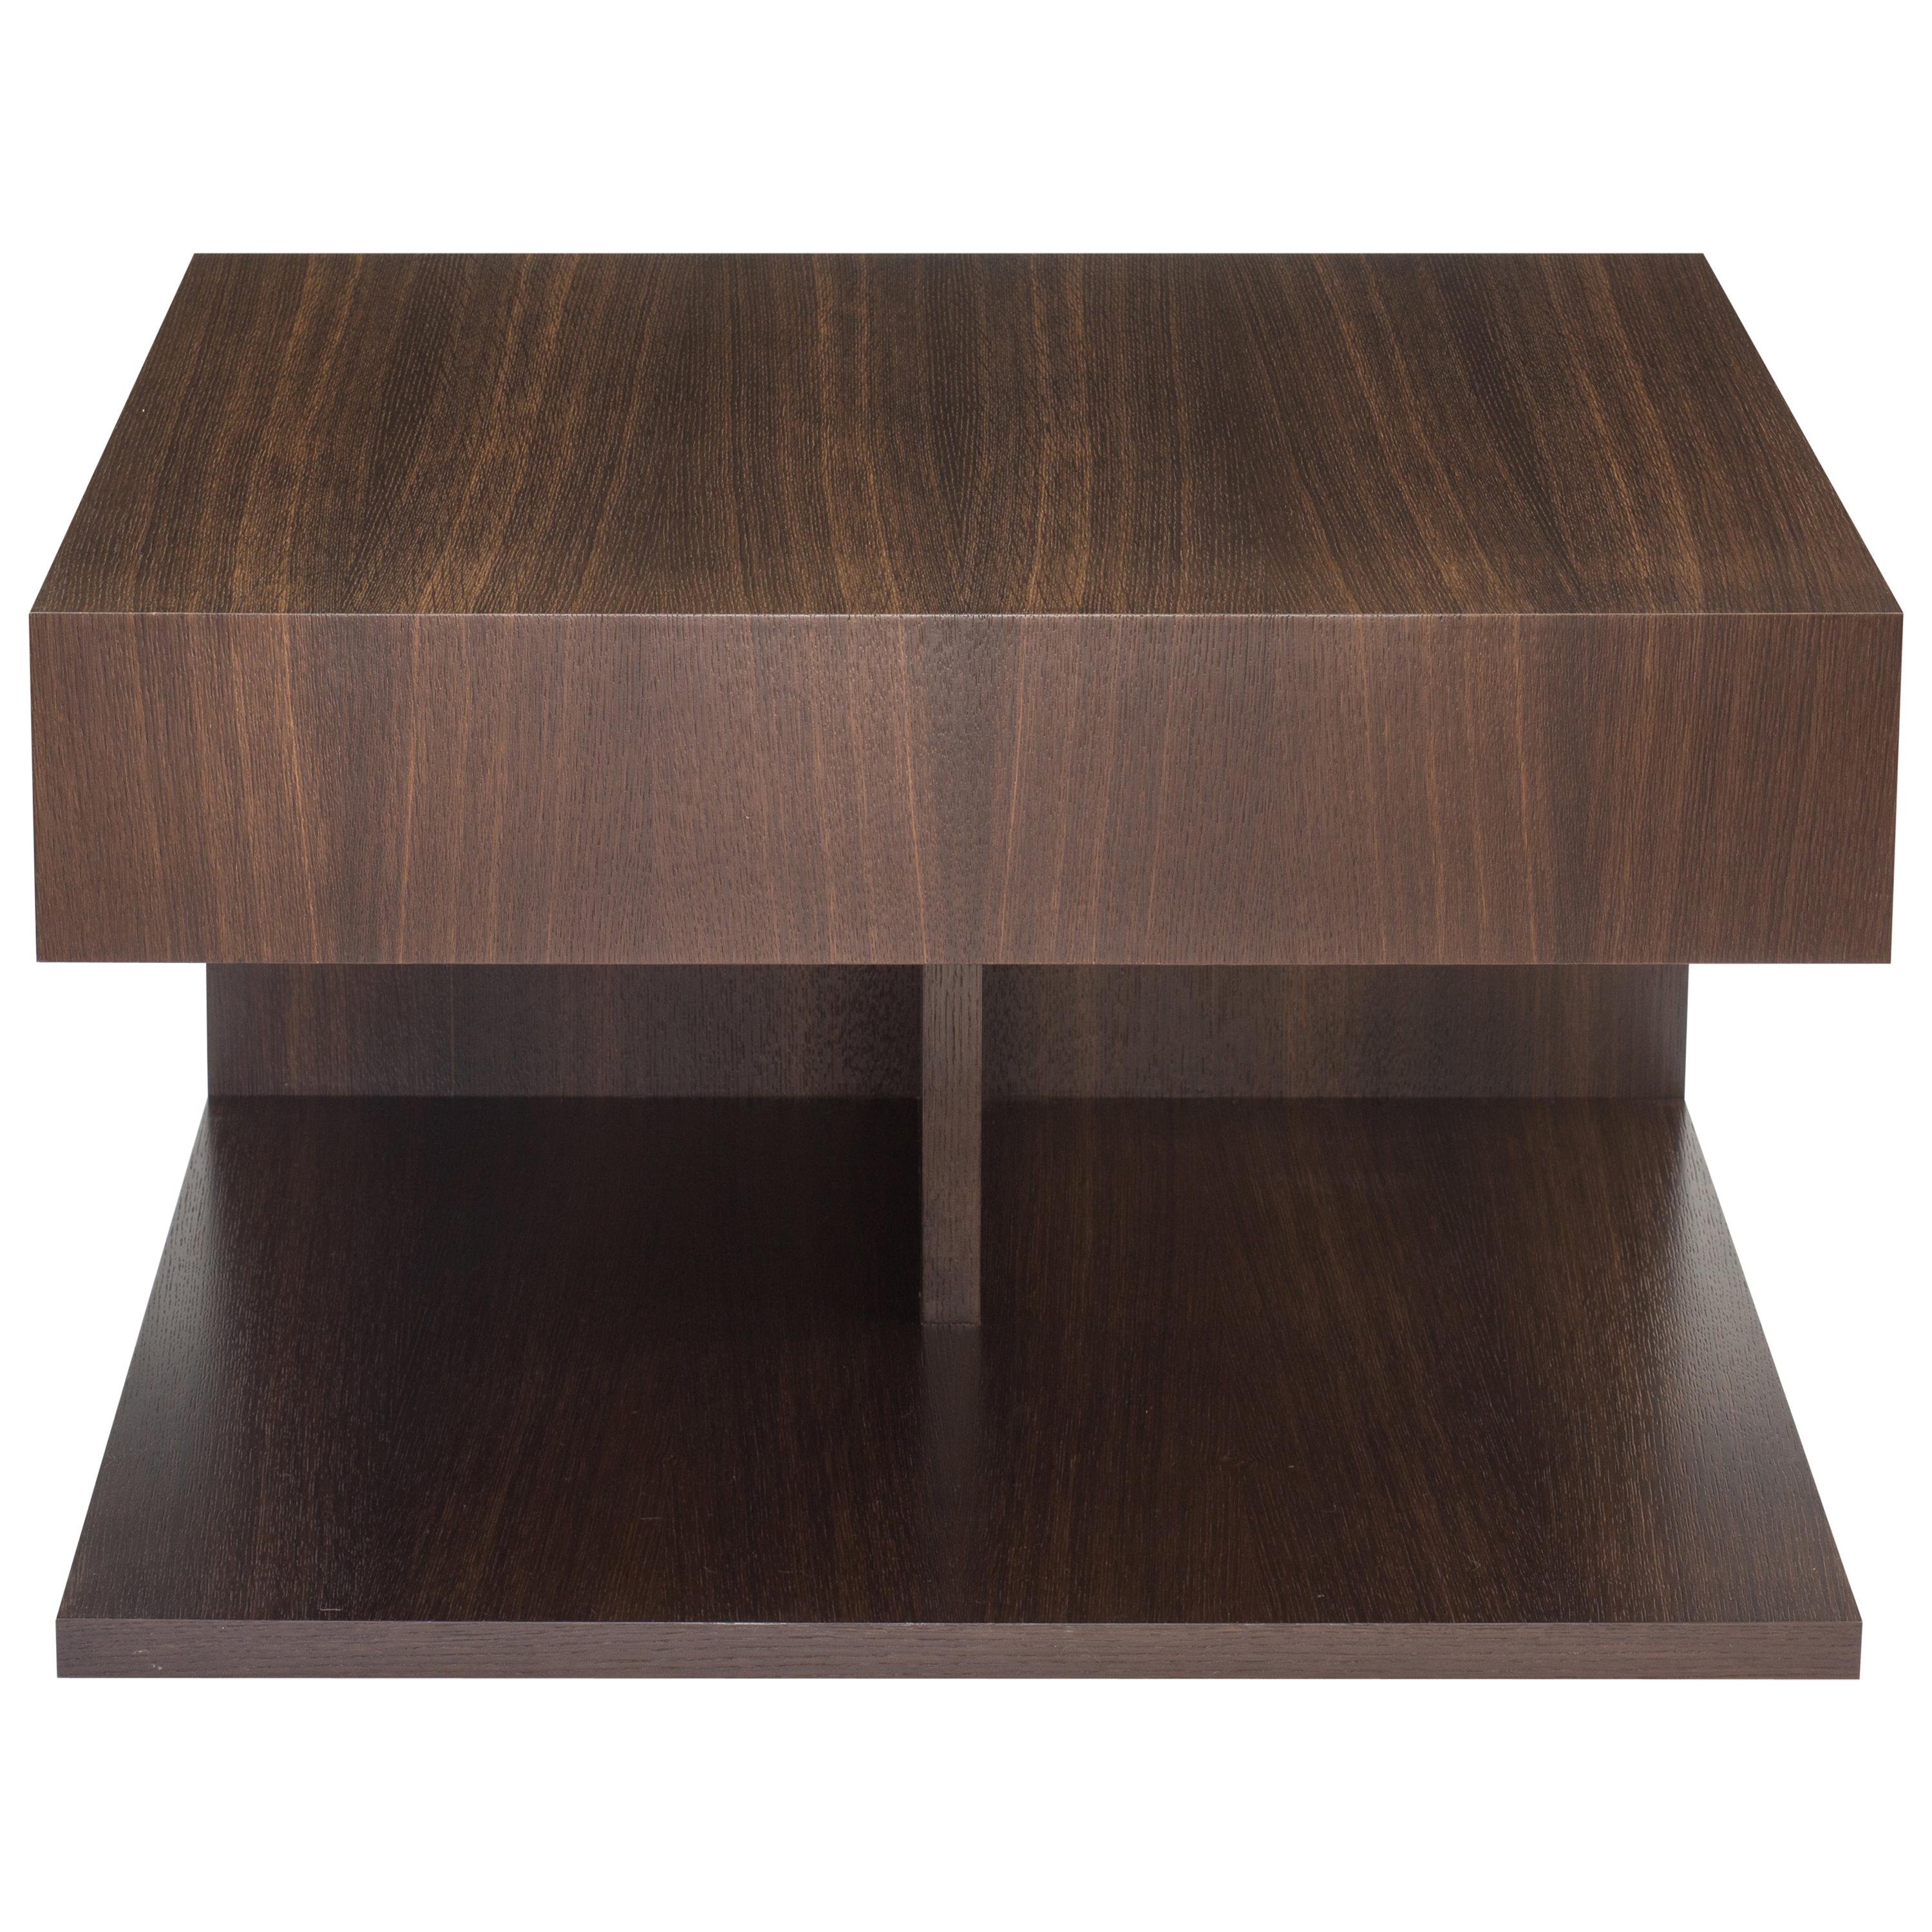 Modern Wood End Table in Fumed Ebony Oak, by Studio DiPaolo